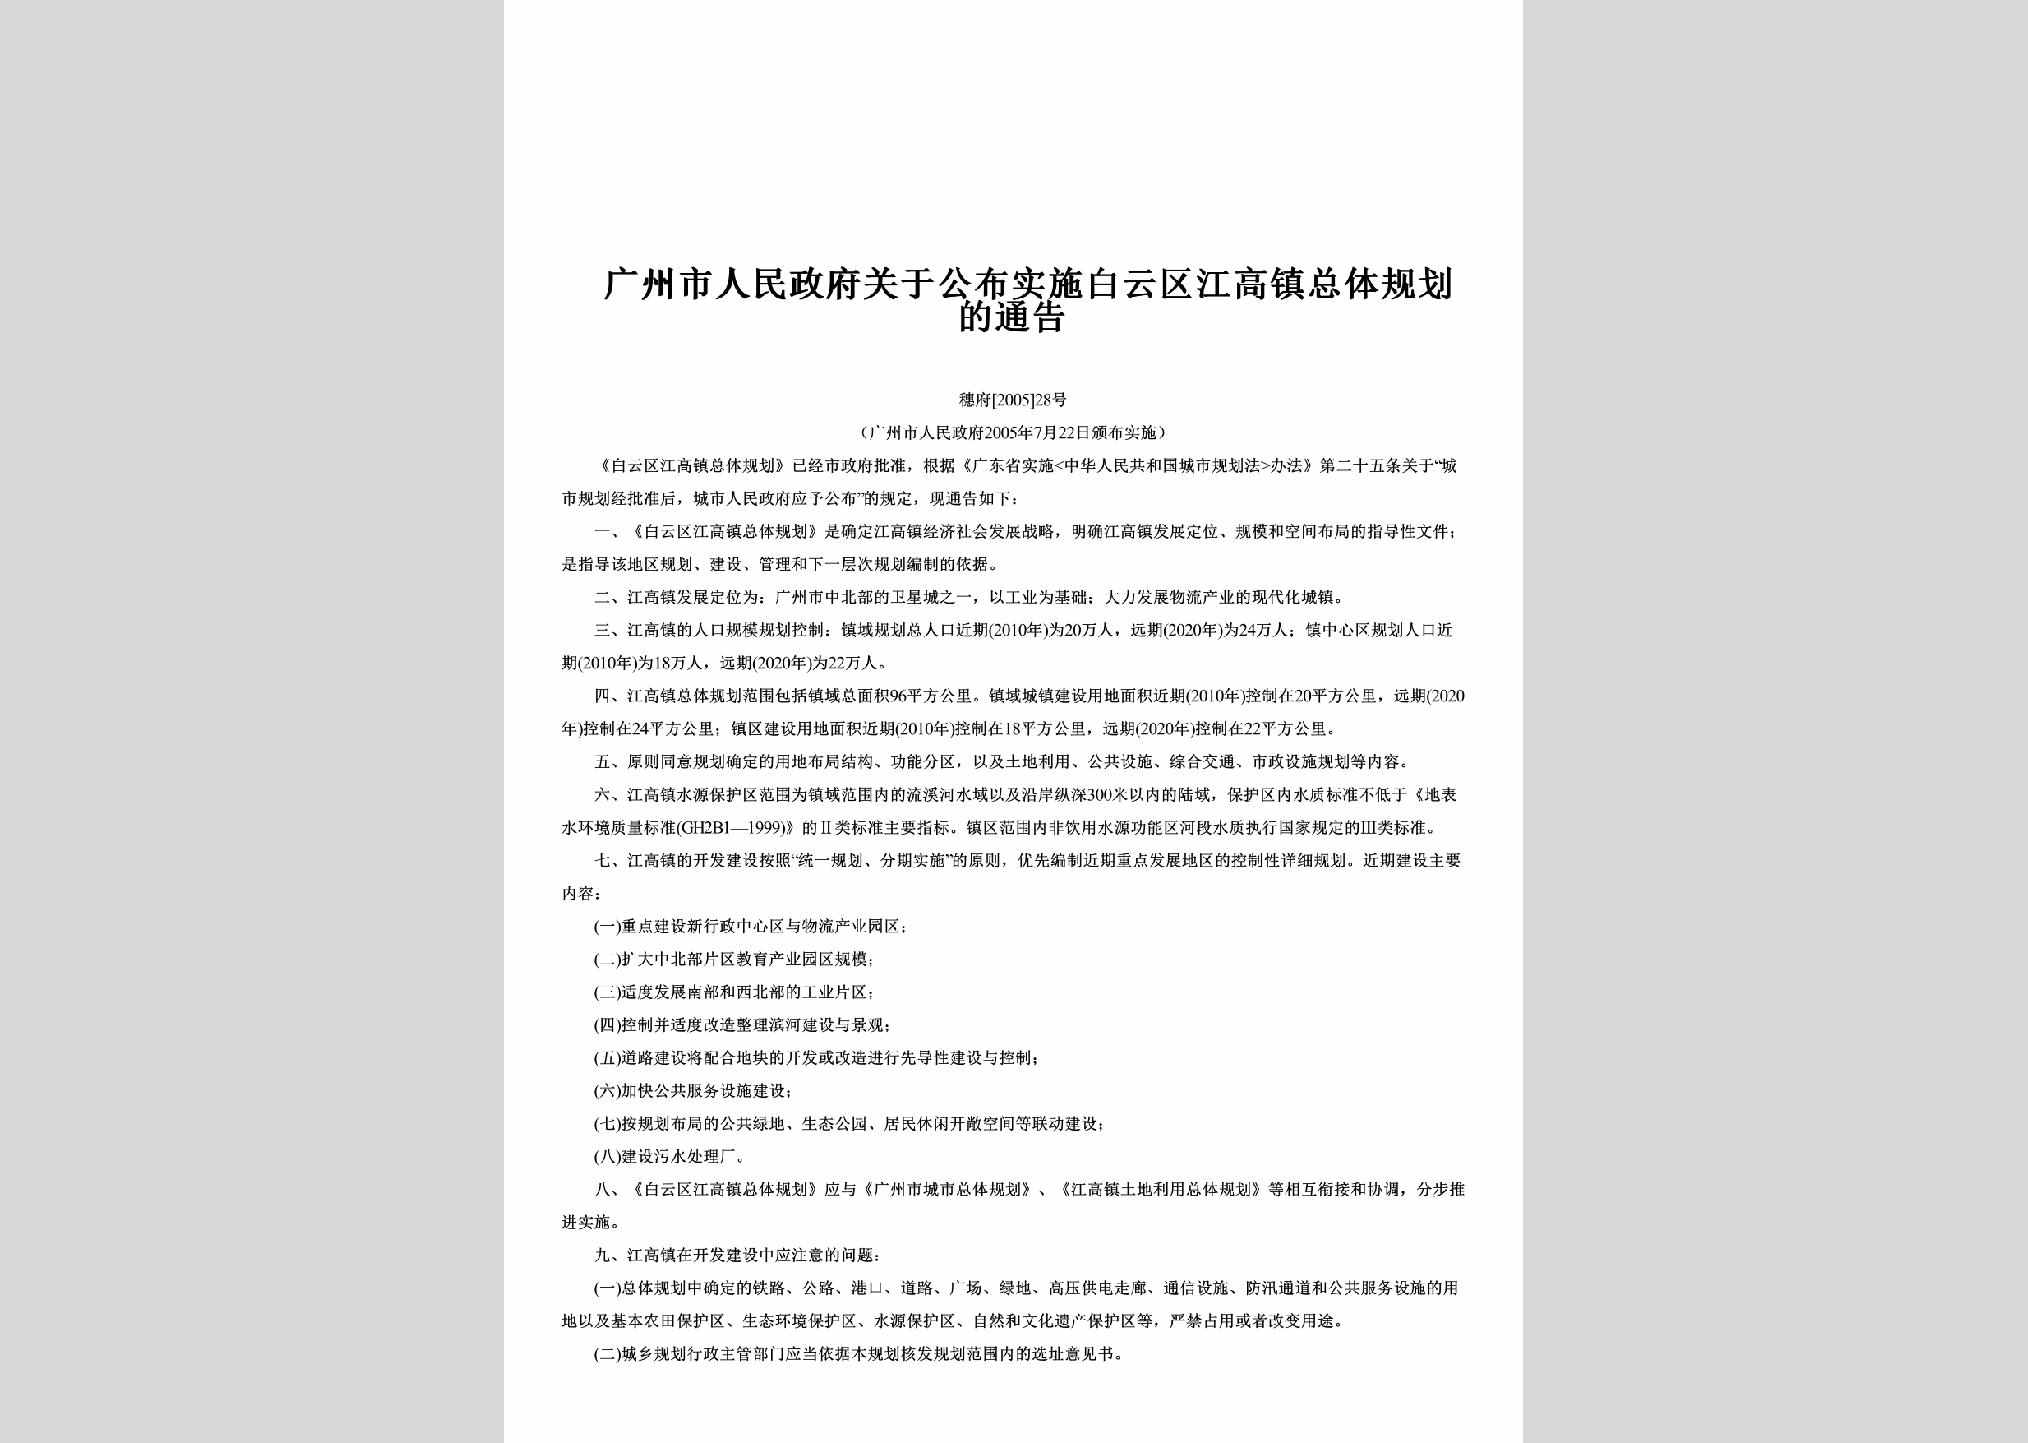 穗府[2005]28号：关于公布实施白云区江高镇总体规划的通告